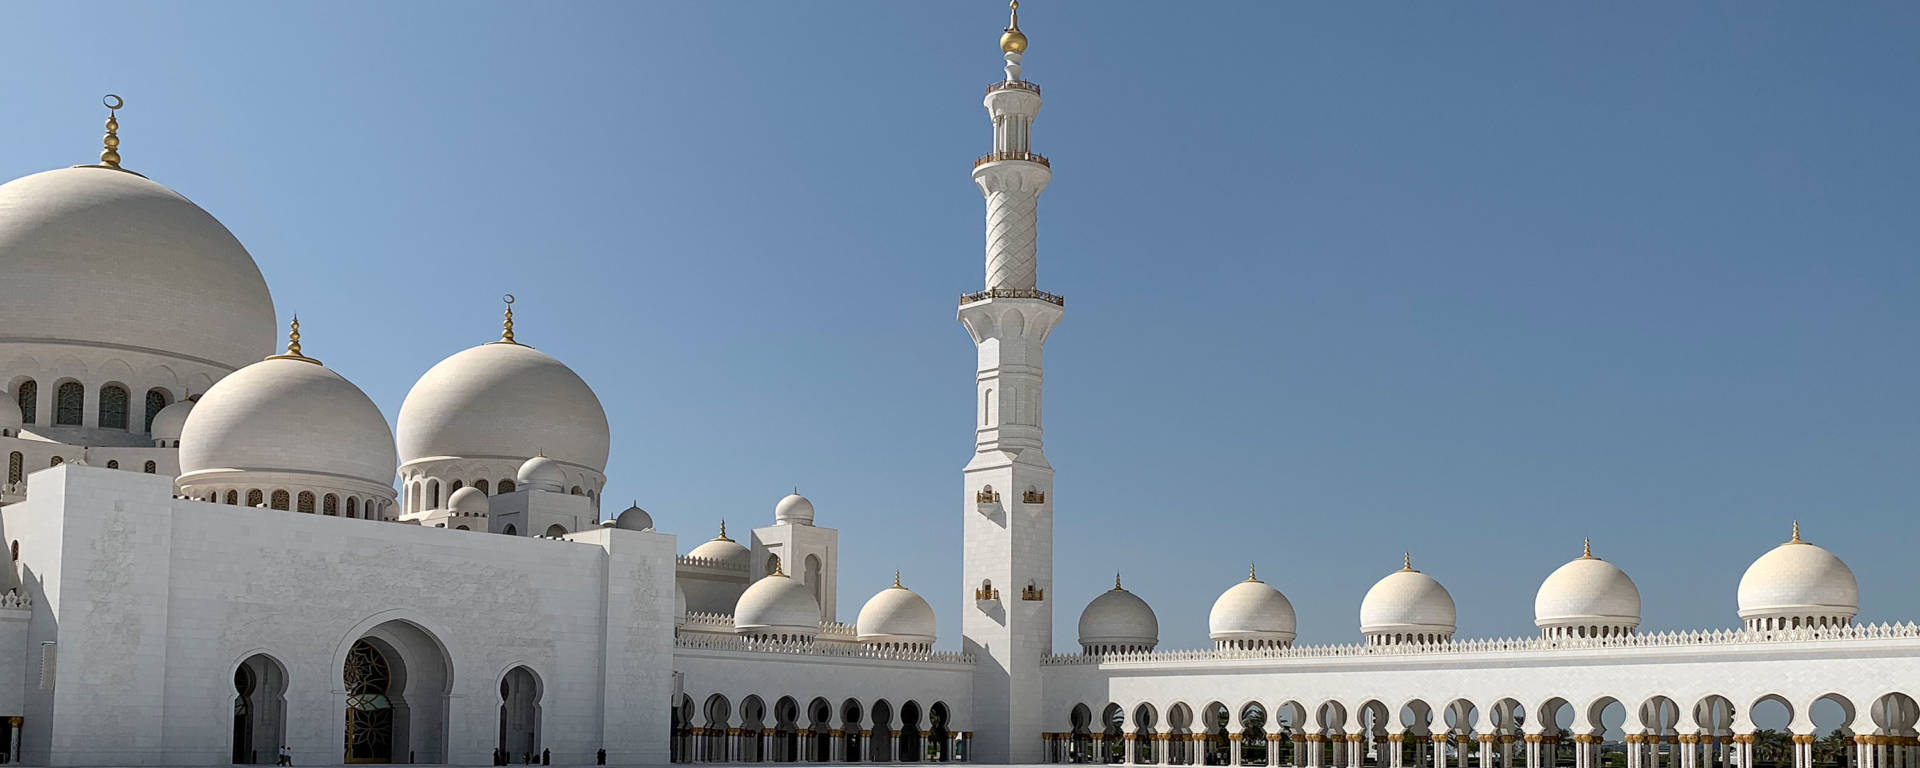 Abu-Dhabi-Grand-Mosque-Reiss-Reisen-Luxusreisen-UAE